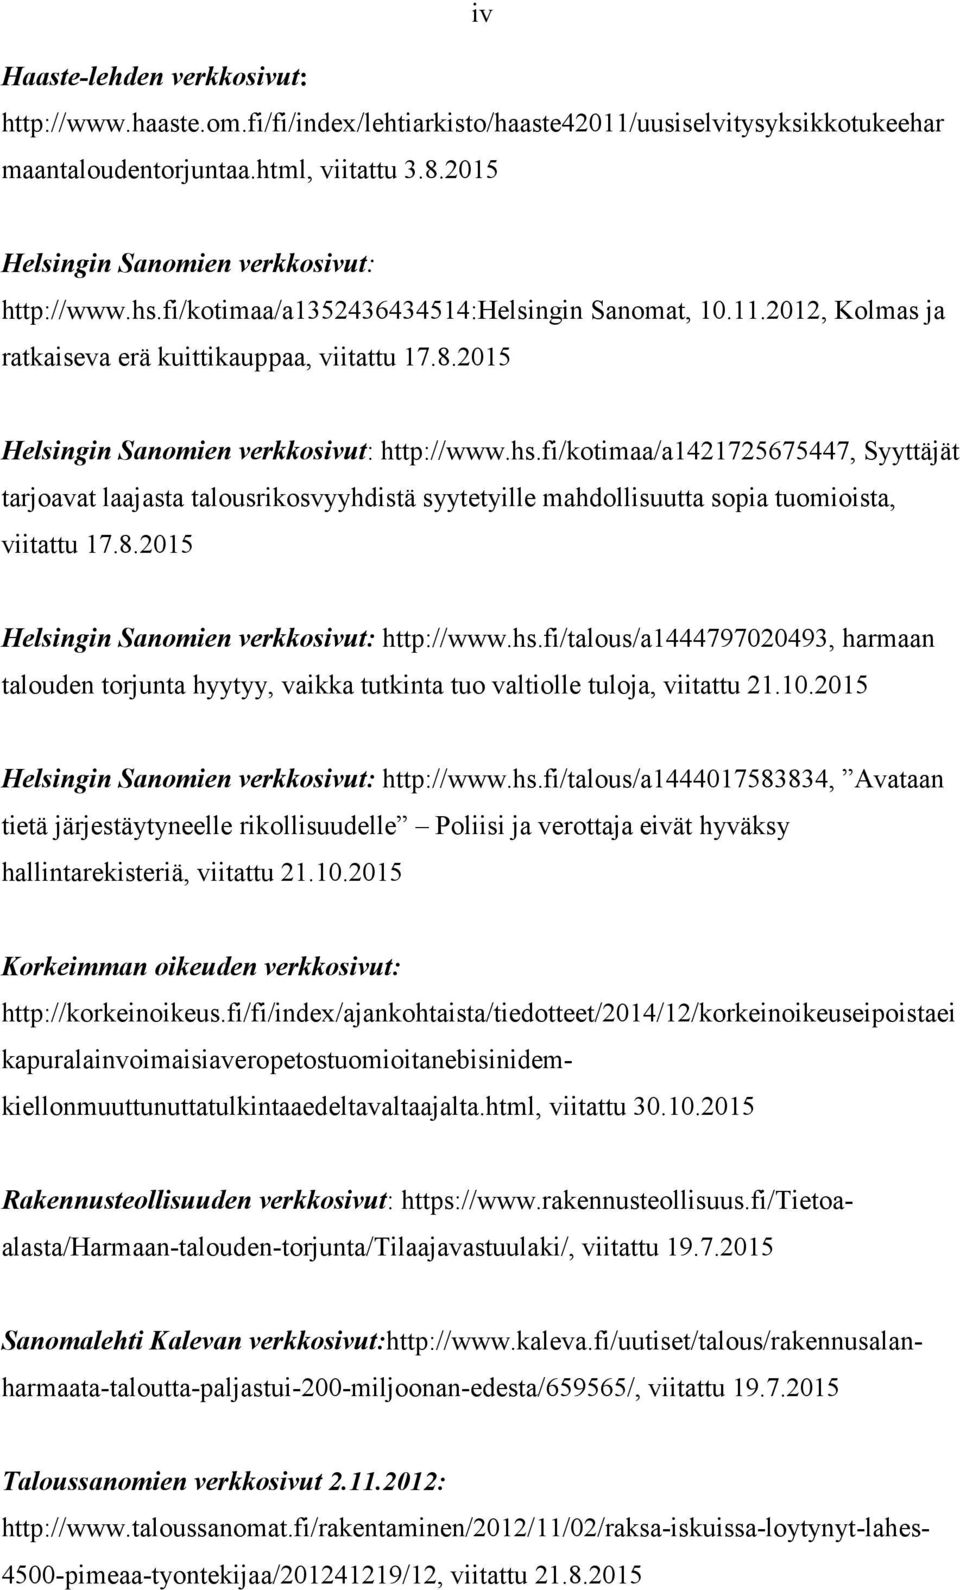 2015 Helsingin Sanomien verkkosivut: http://www.hs.fi/kotimaa/a1421725675447, Syyttäjät tarjoavat laajasta talousrikosvyyhdistä syytetyille mahdollisuutta sopia tuomioista, viitattu 17.8.